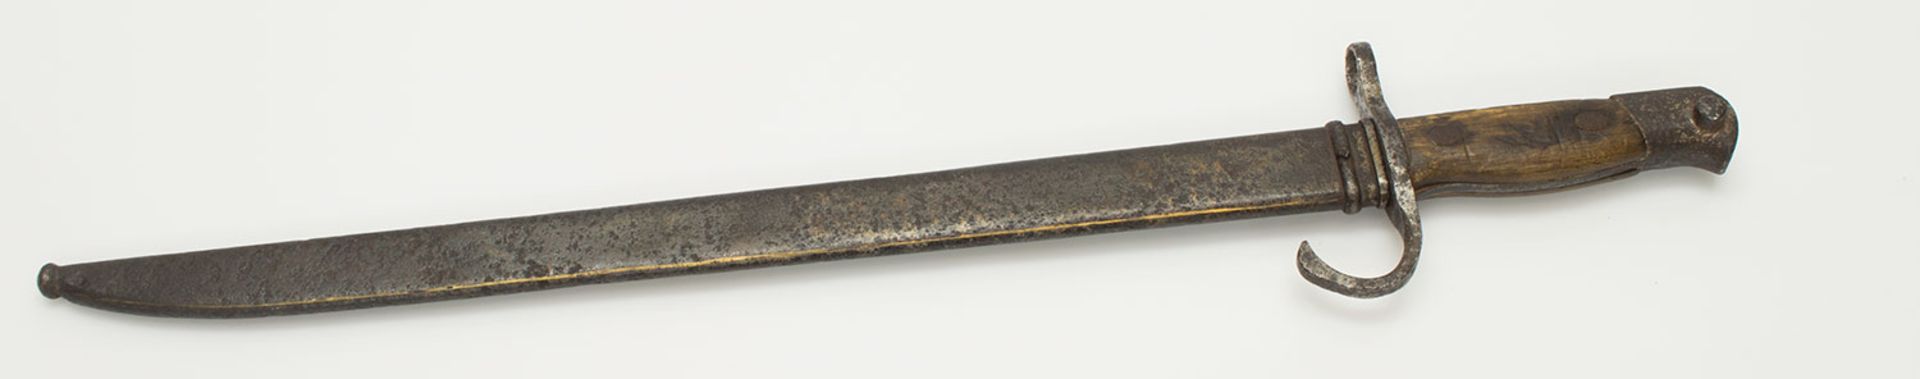 BajonettJapan II. WK, mit Klingenhersteller, Holzgriffschalen u. Eisenscheide, L. 53 cm - Bild 3 aus 3